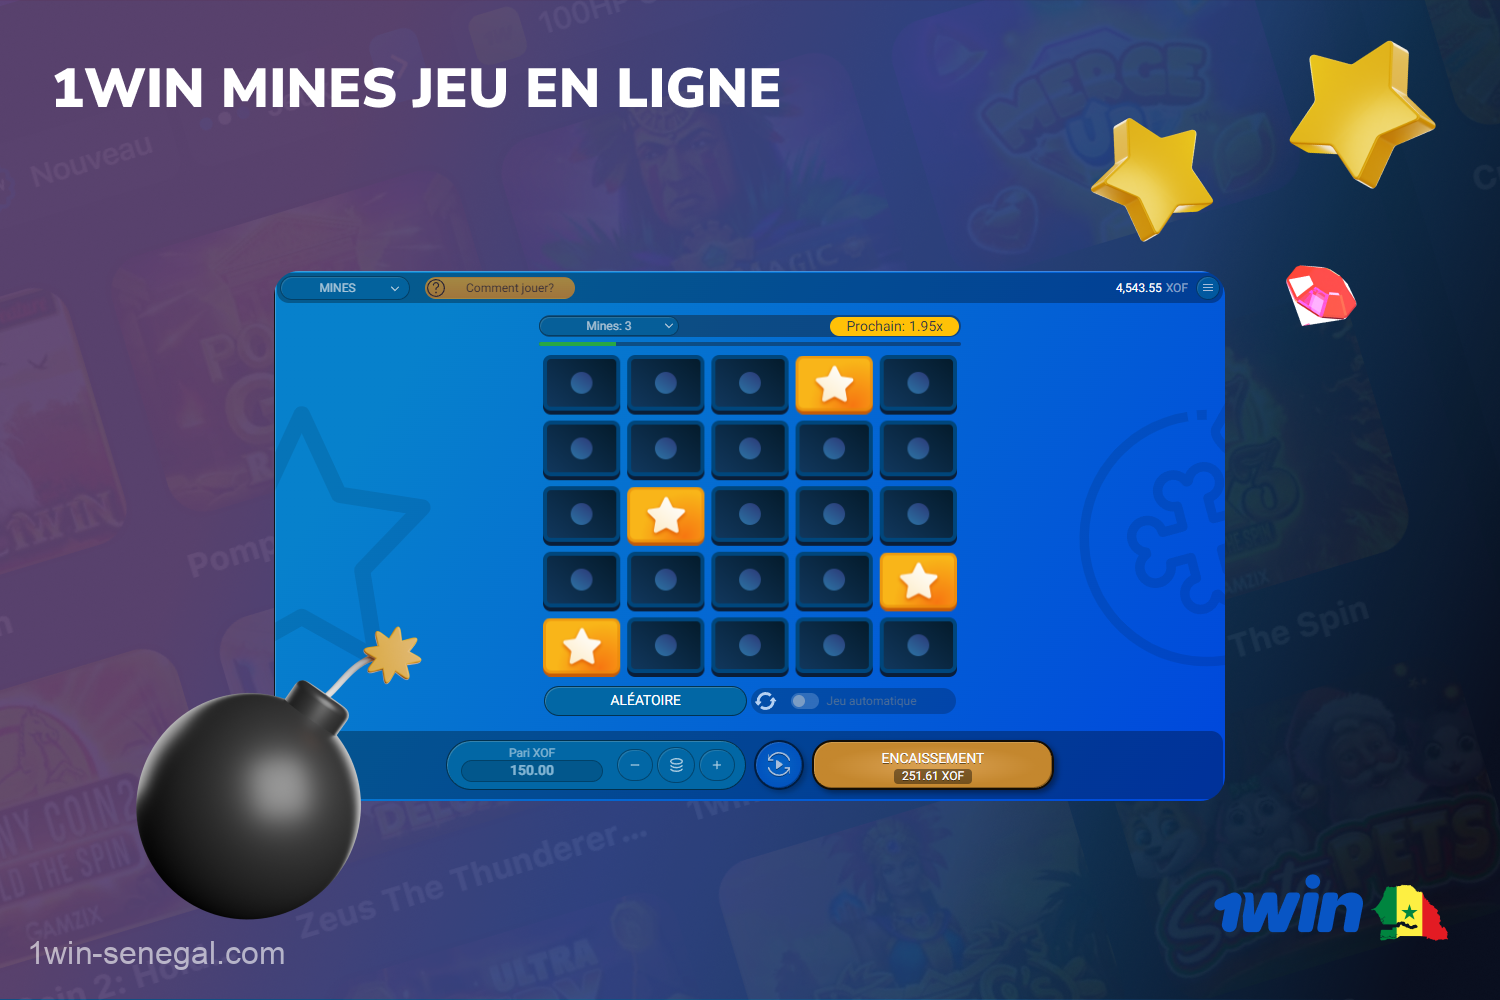 Sur 1win, les utilisateurs sénégalais peuvent jouer à Mines, un jeu populaire qui combine stratégie, chance et excitation pour gagner beaucoup d'argent